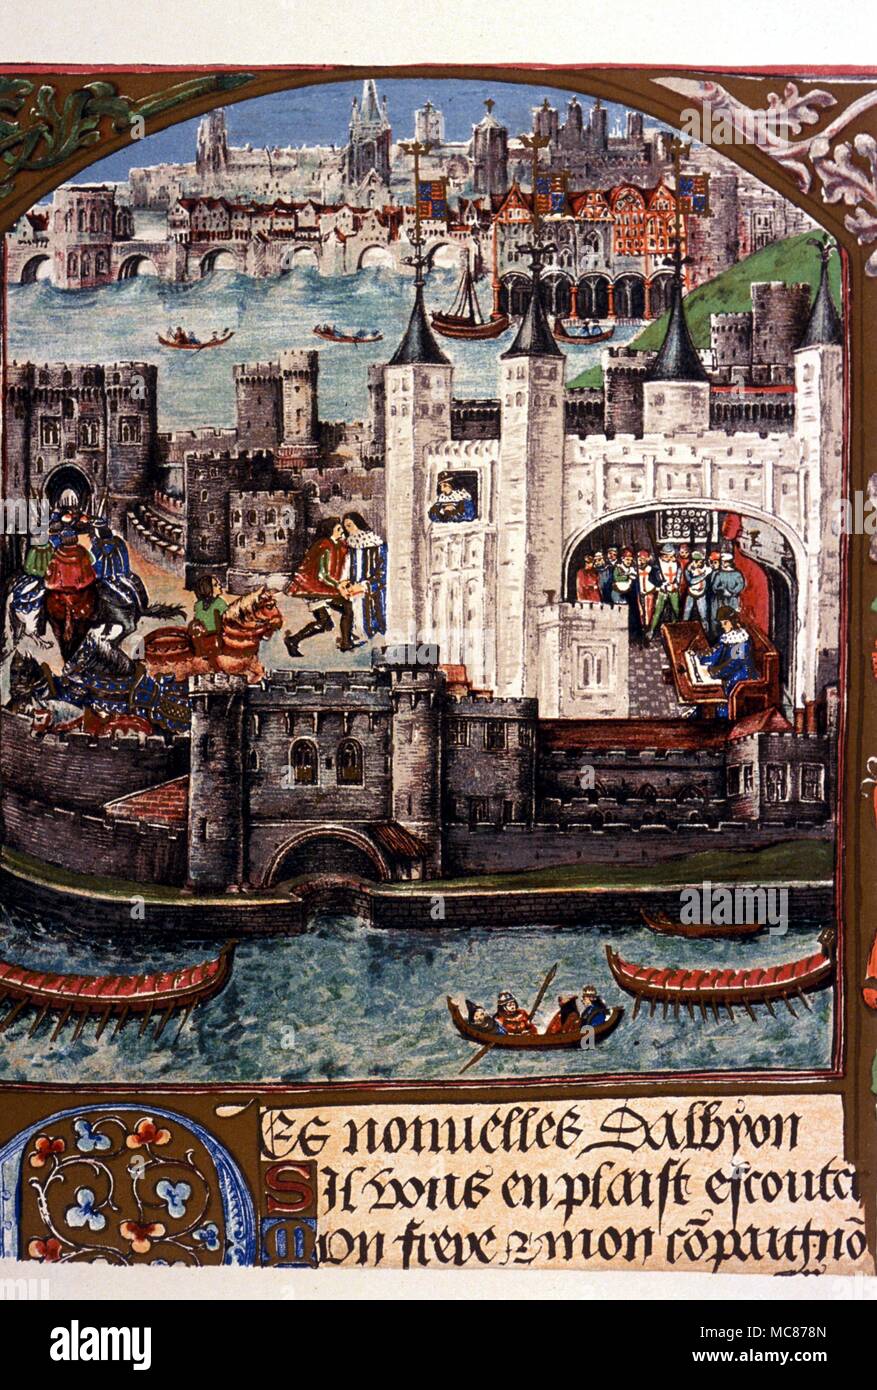 Geschichte - TOWER OF LONDON der Tower von London, London Bridge, in der Zeit von Henry VII. 19. Jahrhundert litograph vom Royal Mss. 16, in der British Library. Stockfoto